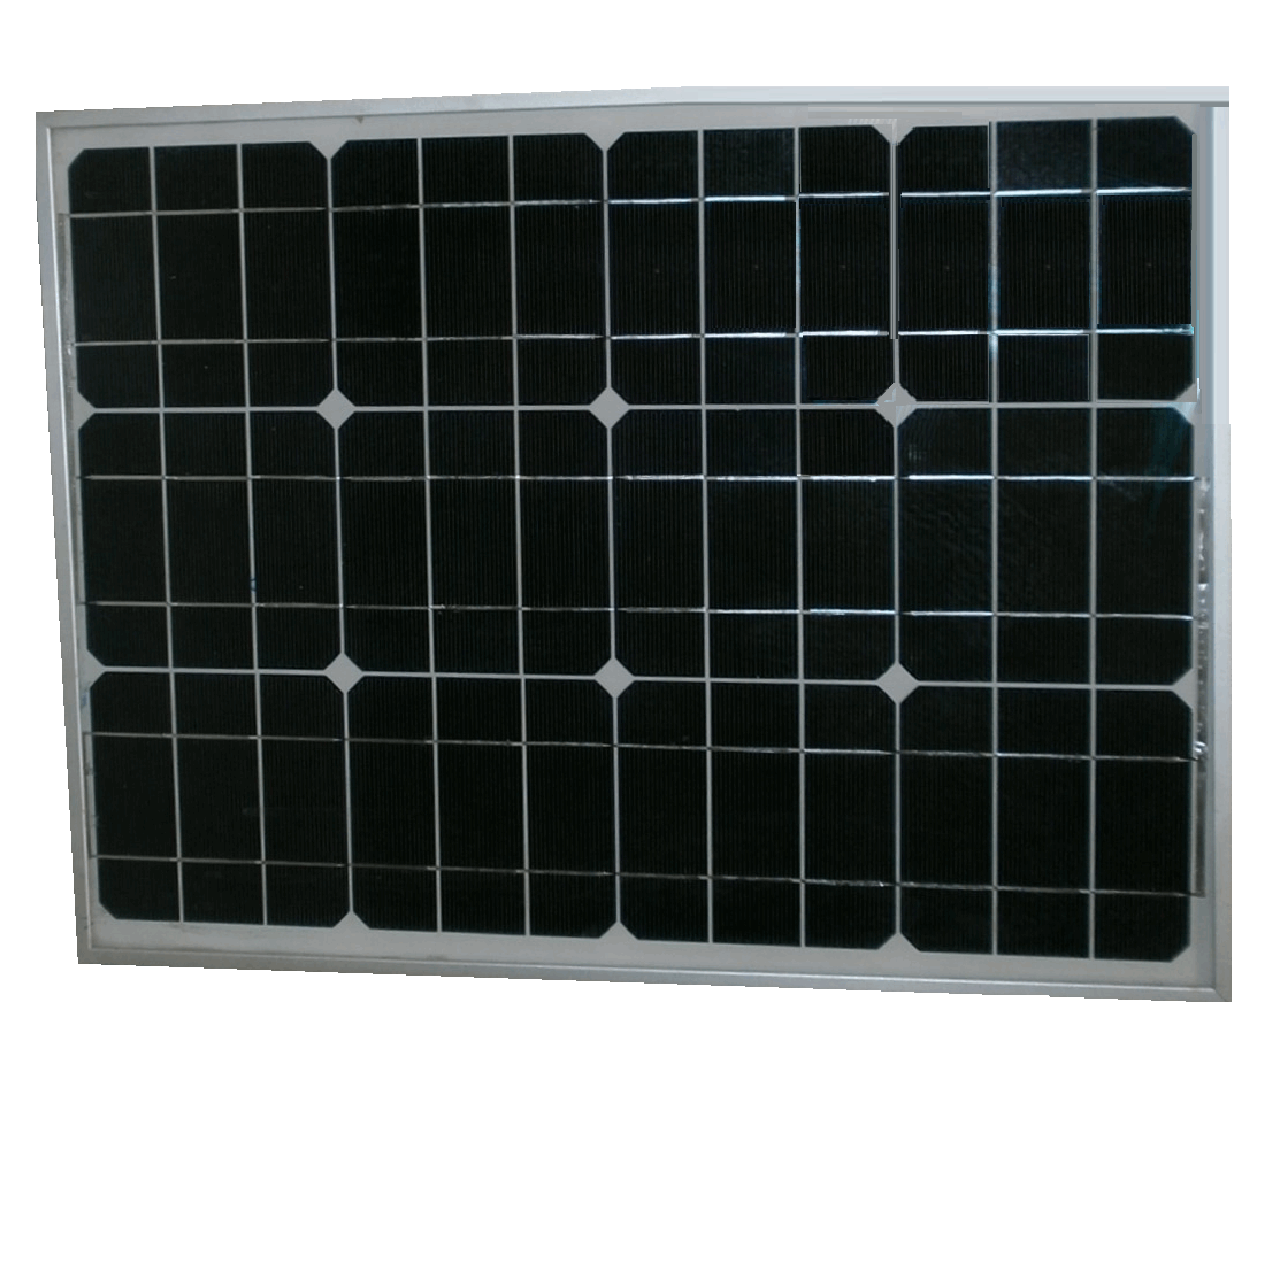 پنل خورشیدی Voltamax مدل 30 وات